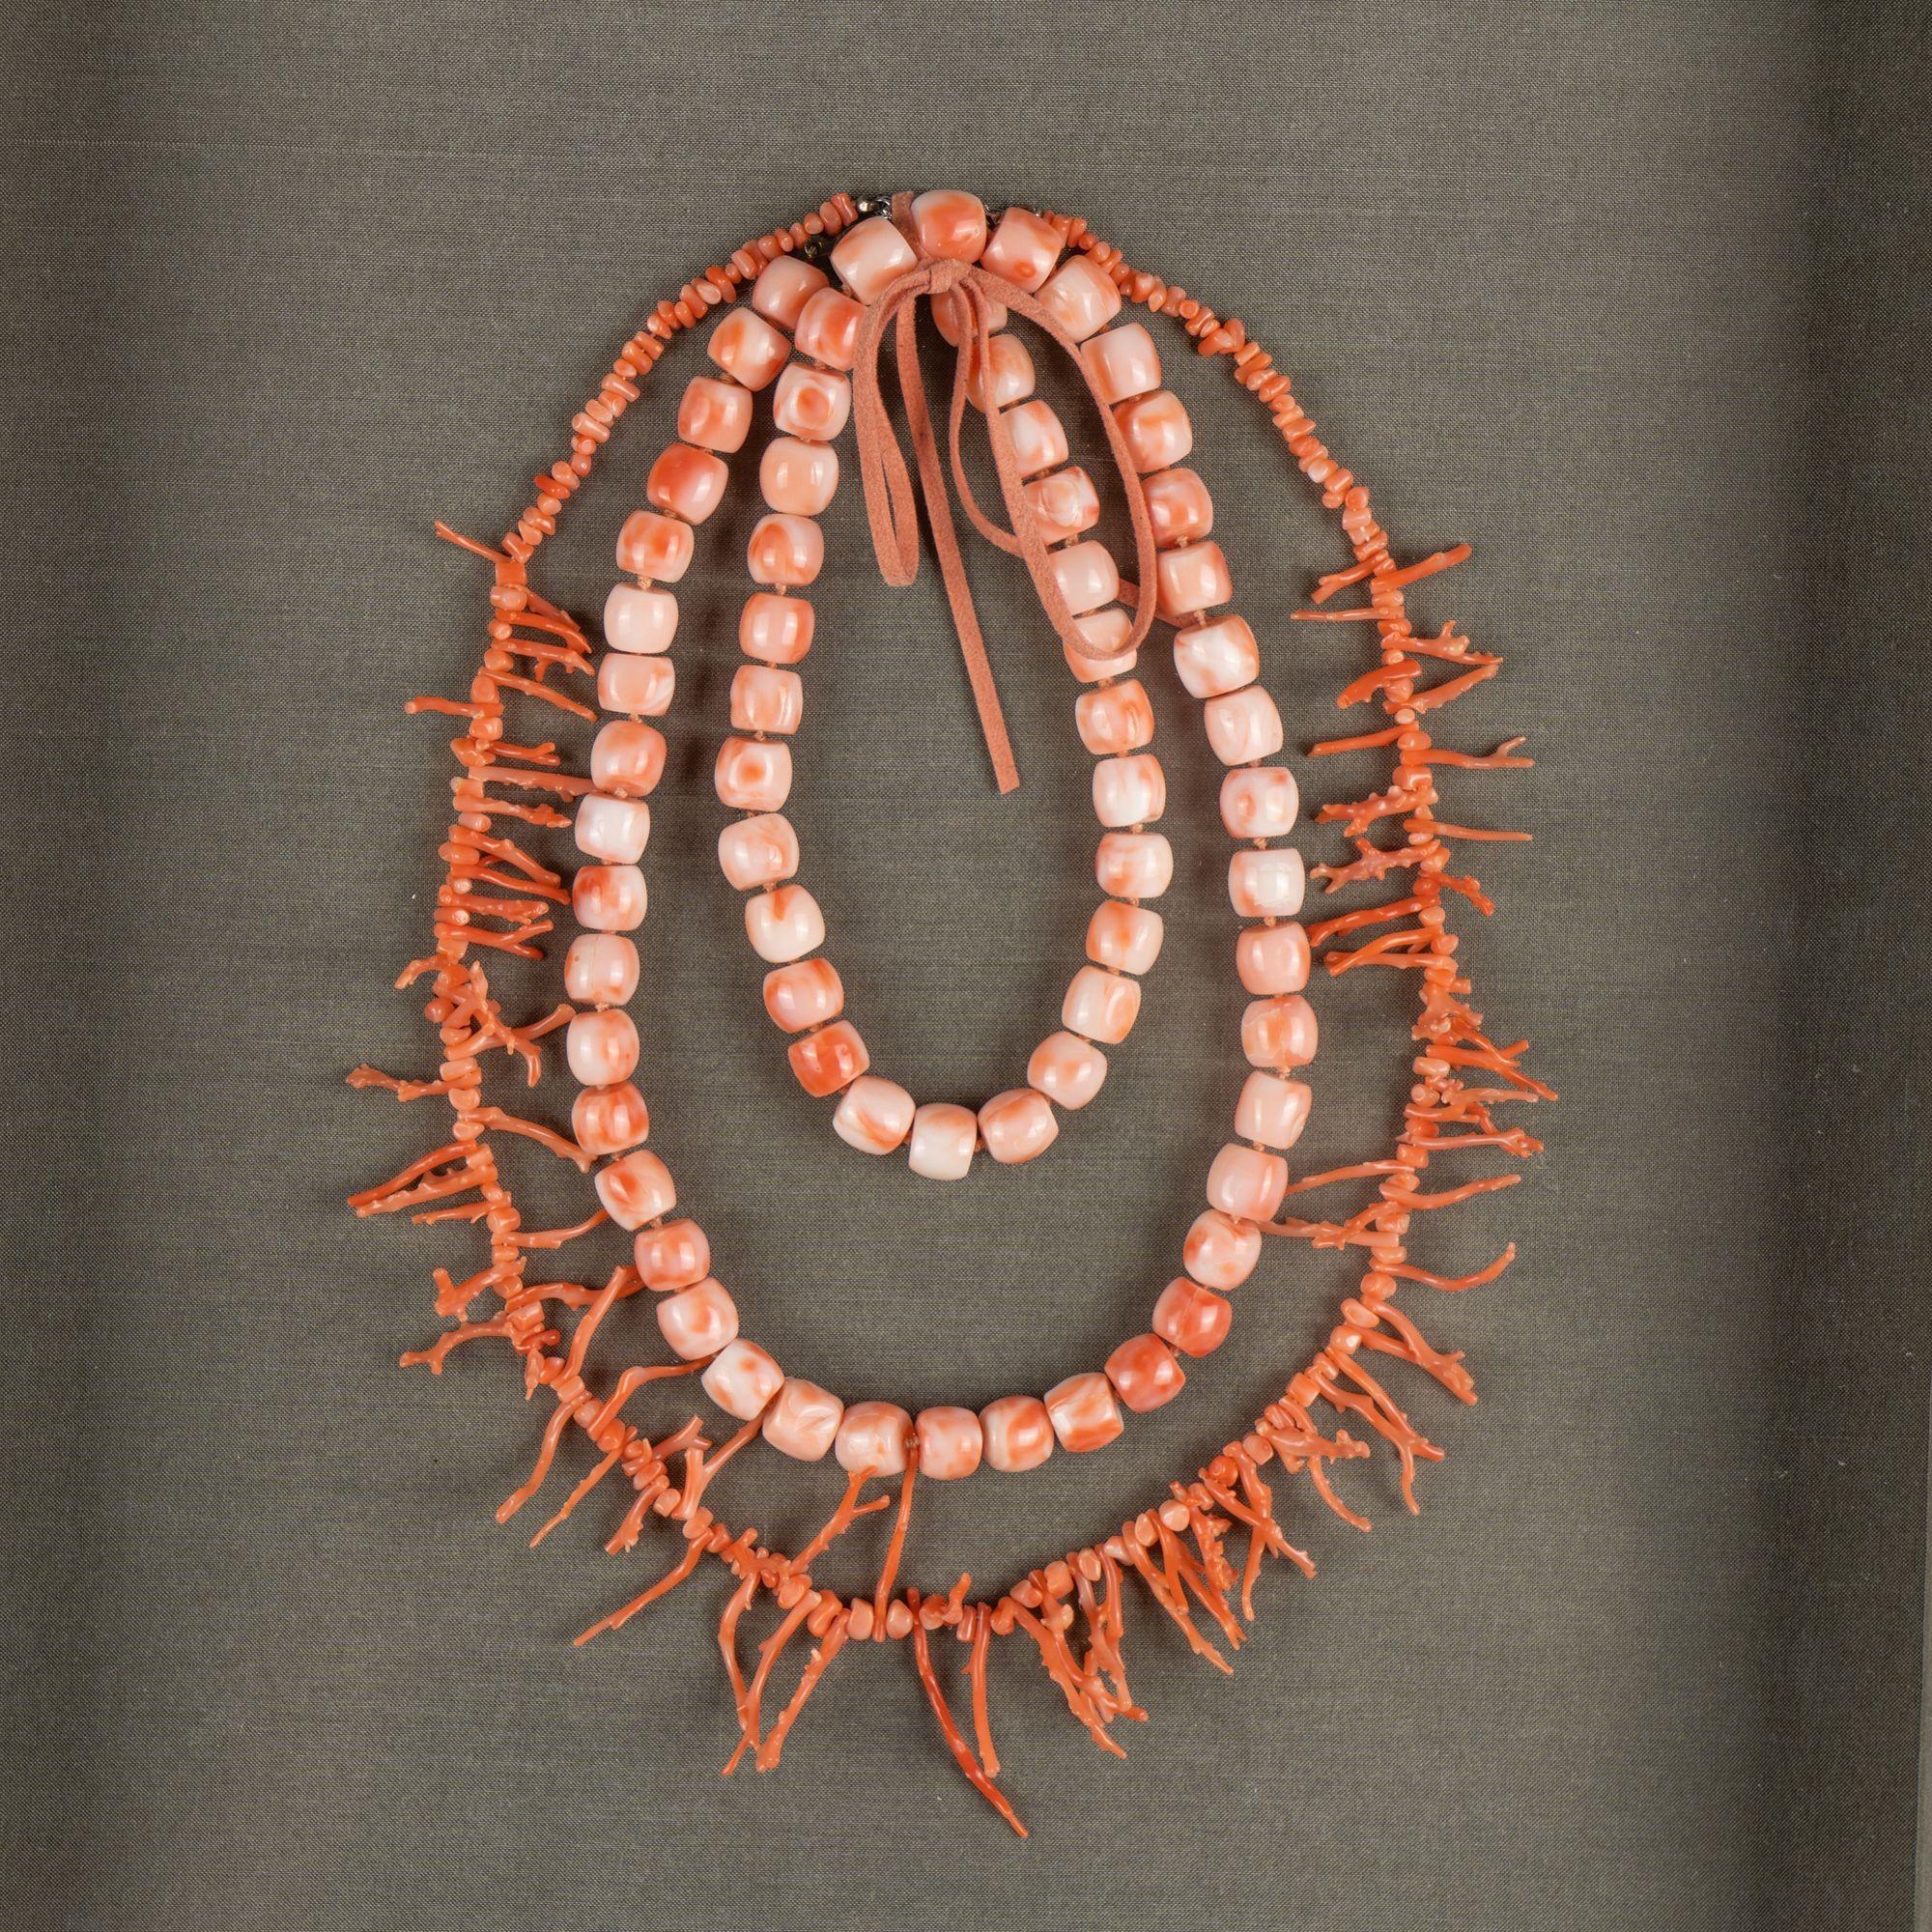 Branch Korallen und Perle Korallen Halsketten montiert auf grünem Leinen und in einem Schatten-Box Rahmen.

Italien, um 1930.